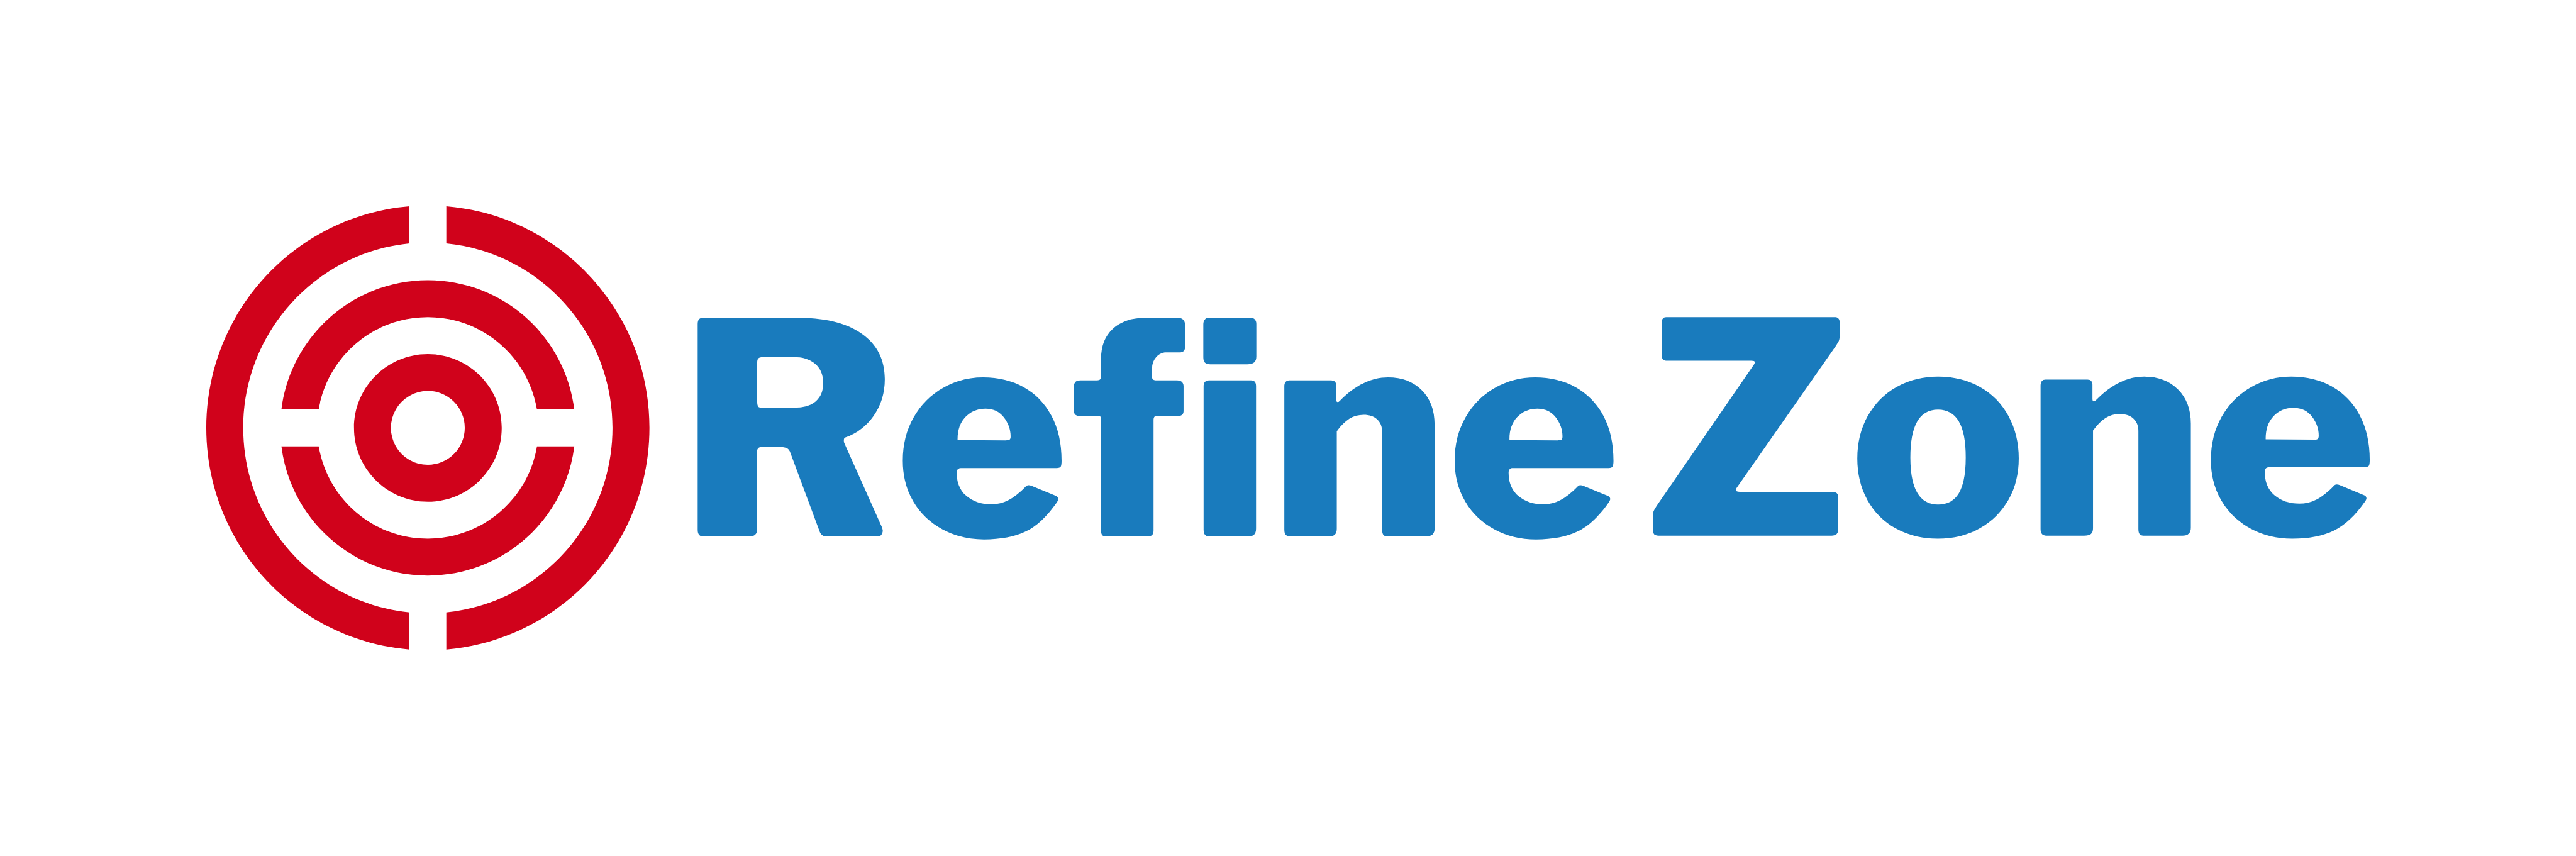 Refine Zone